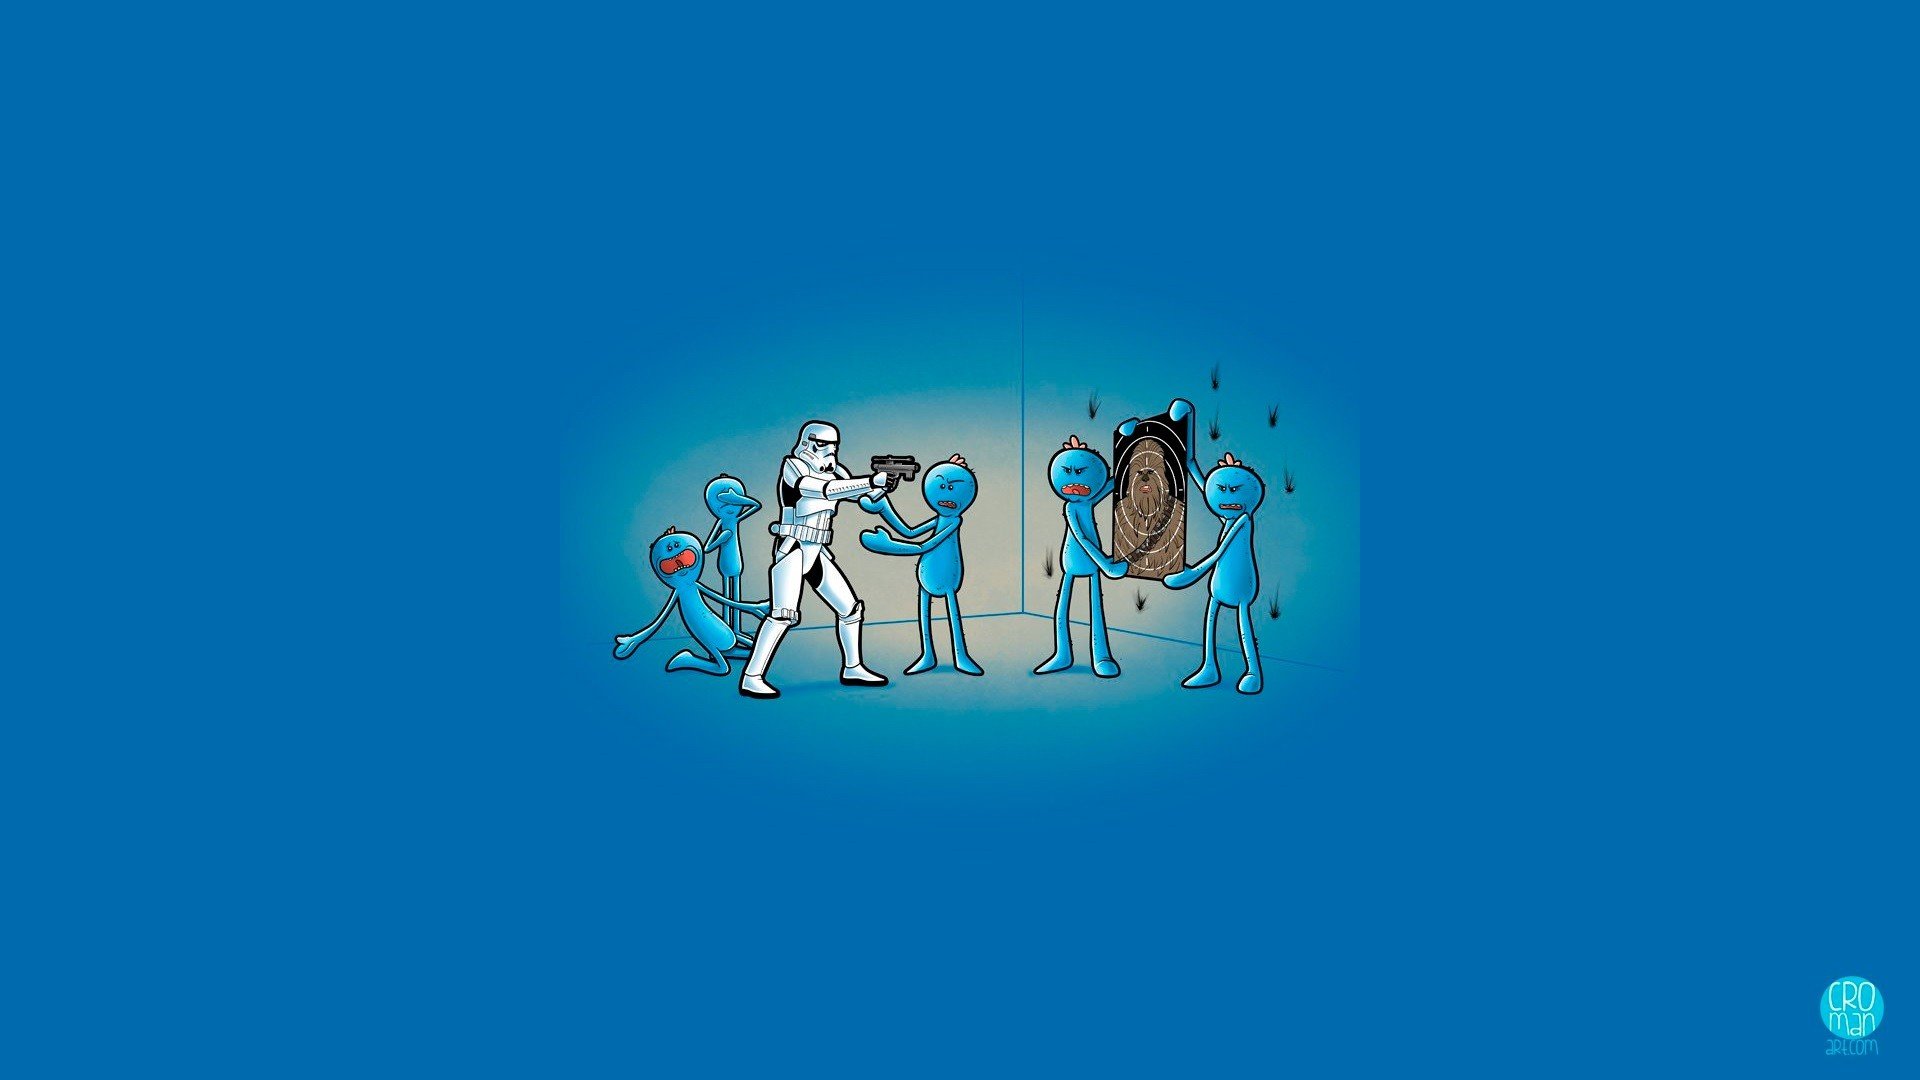 stormtrooper, Chewbacca, Mr. Meeseeks, Star Wars, Humor, Blue, Rick and